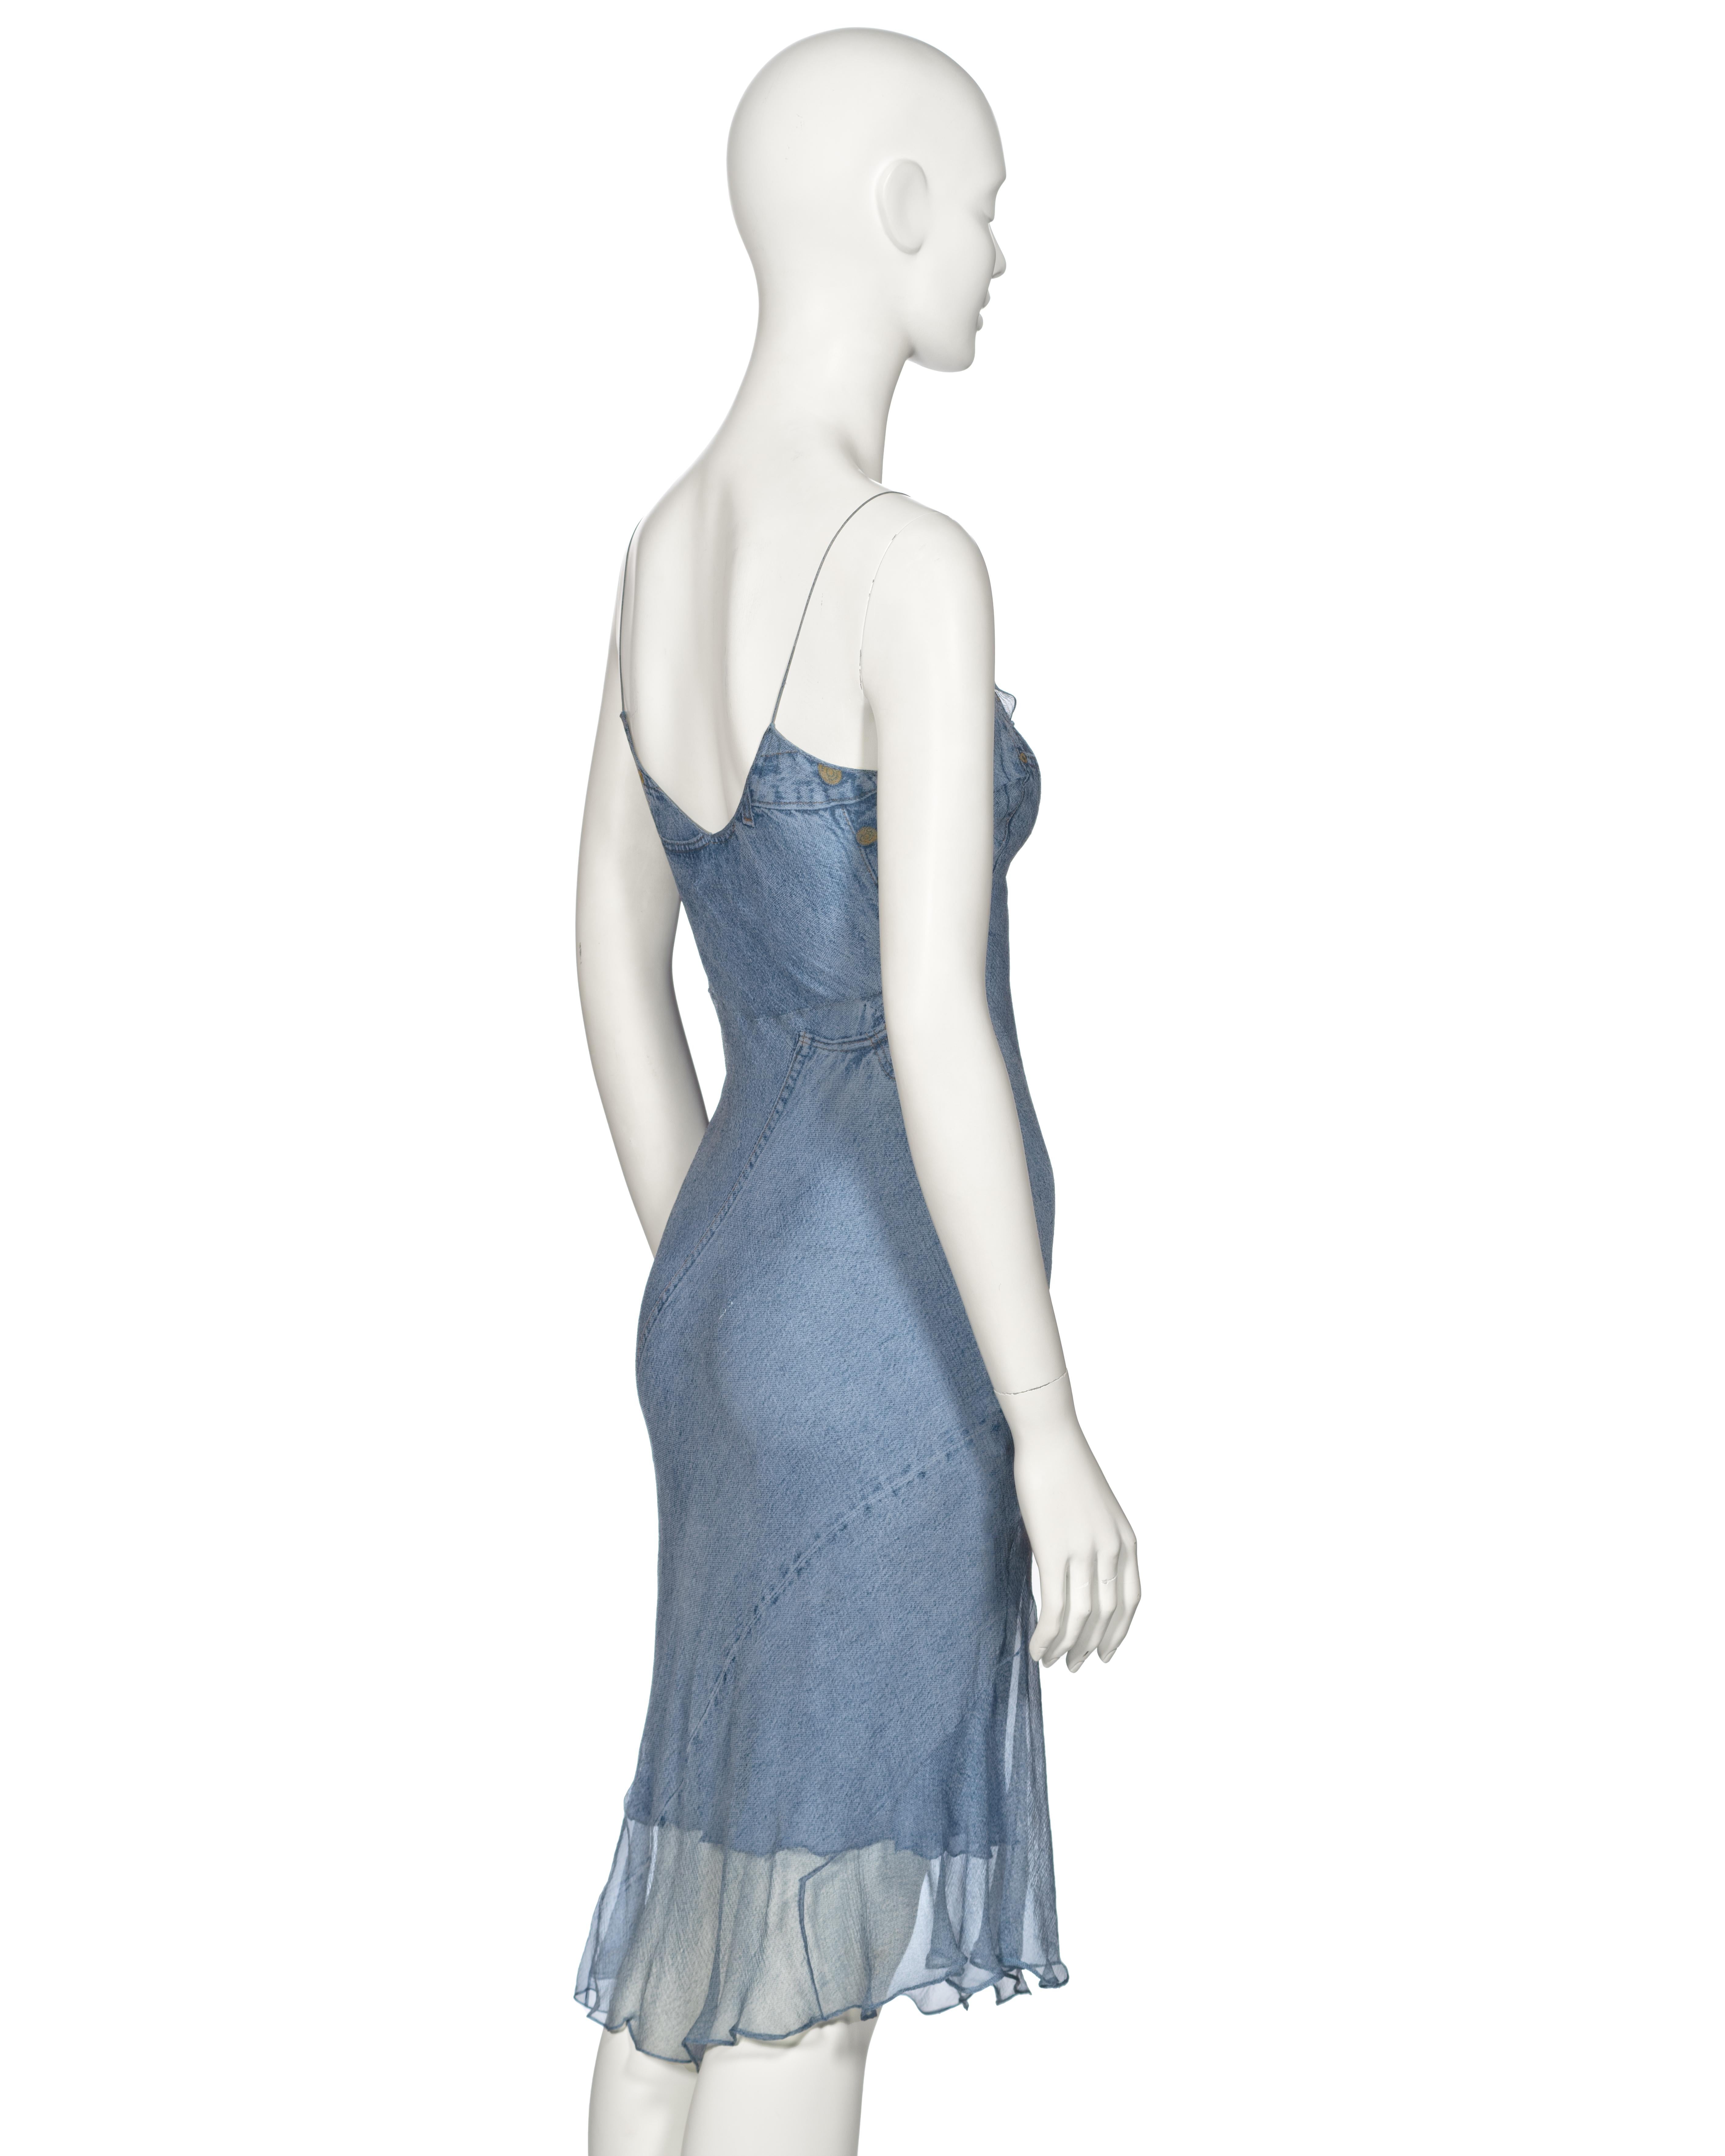 Christian Dior by John Galliano Trompe L'oeil Denim Print Silk Dress, ss 2000 4